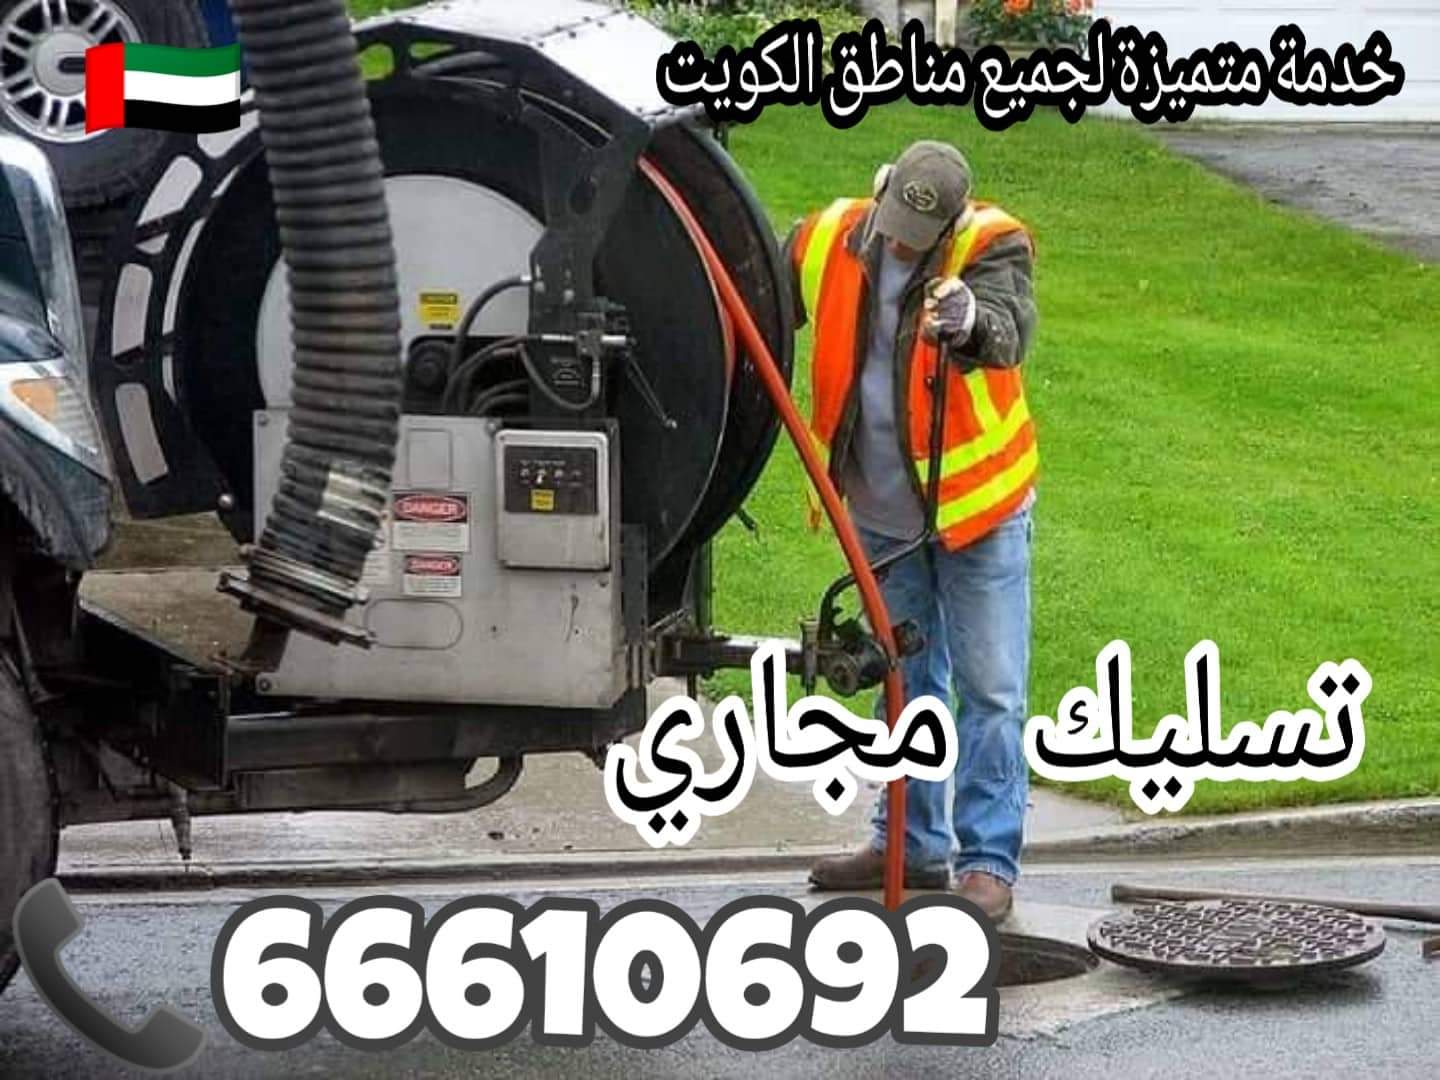 تسليك مجاري العديلية / 66610692 / صيانة وتركيب ادوات صحية الكويت